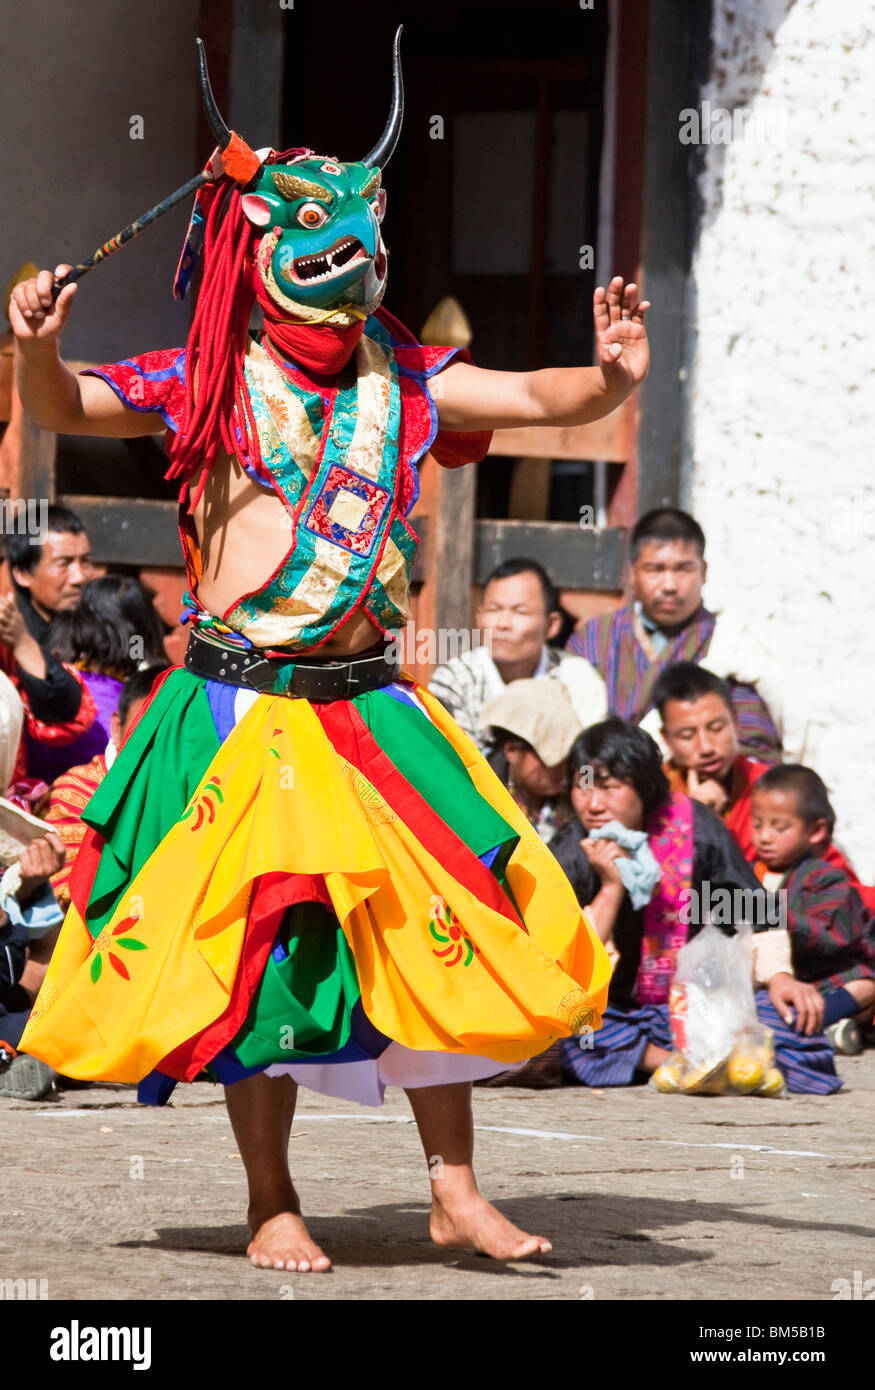 Danses traditionnelles exécutées au festival annuel Tsechu dans l'est du Bhoutan, Trashigang Banque D'Images